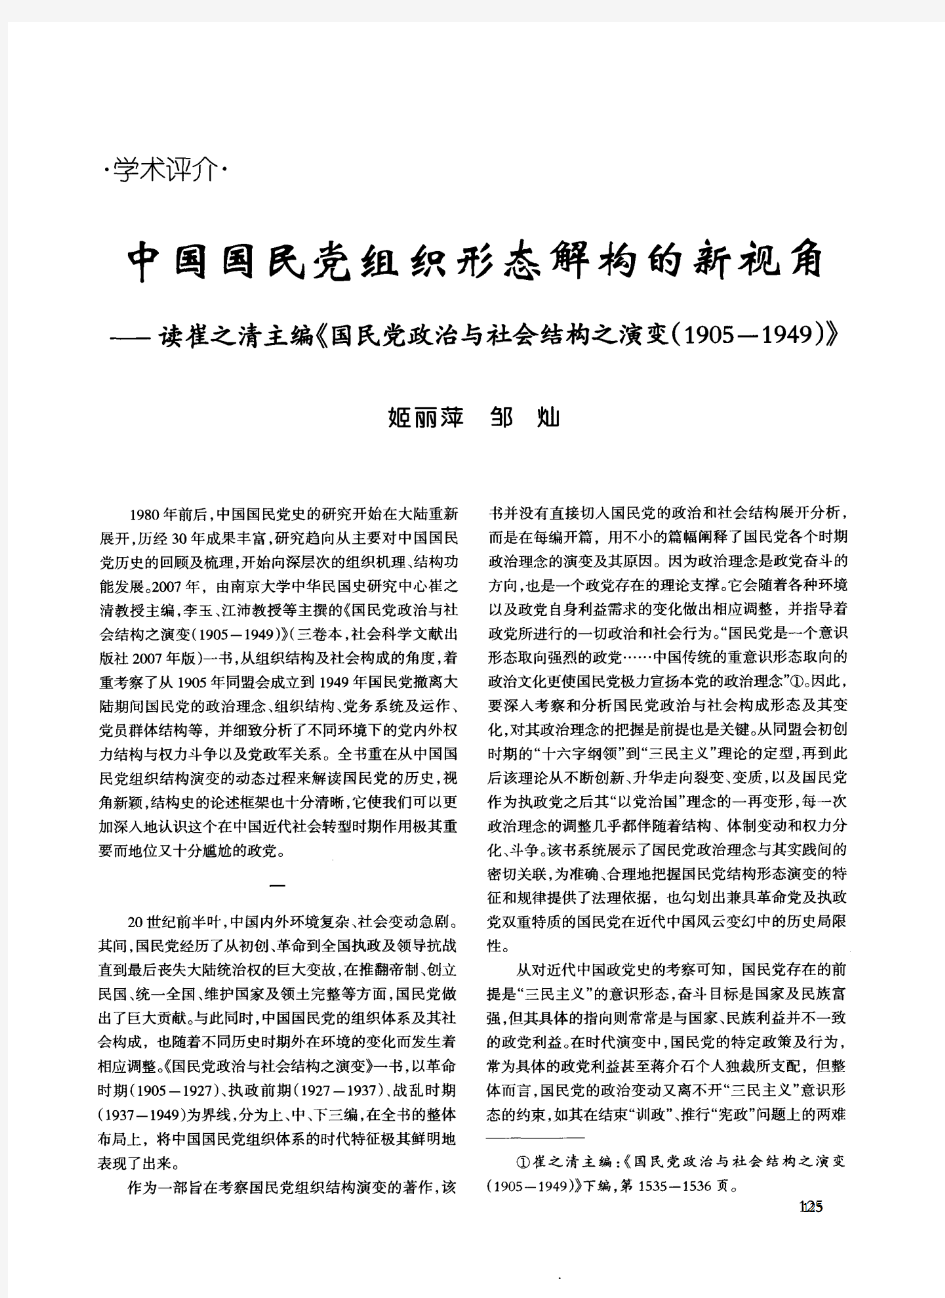 中国国民党组织形态解构的新视角——读崔之清主编《国民党政治与社会结构之演变(1905-1949)》